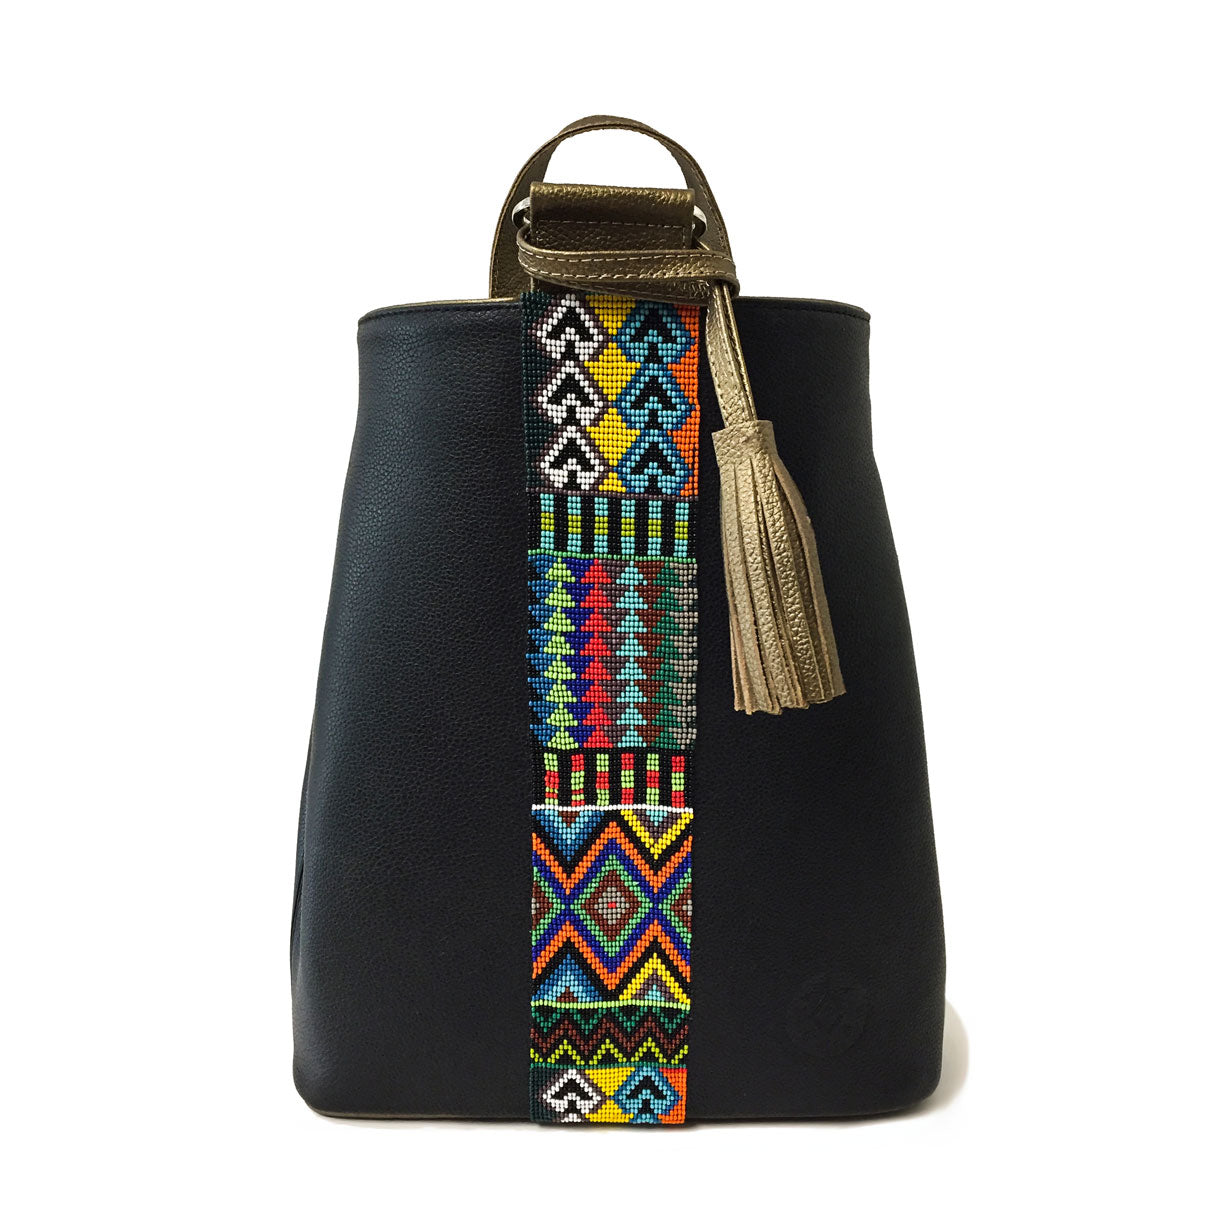 Mochila Backpack de piel para mujer color negro con cinta artesanal de chaquira